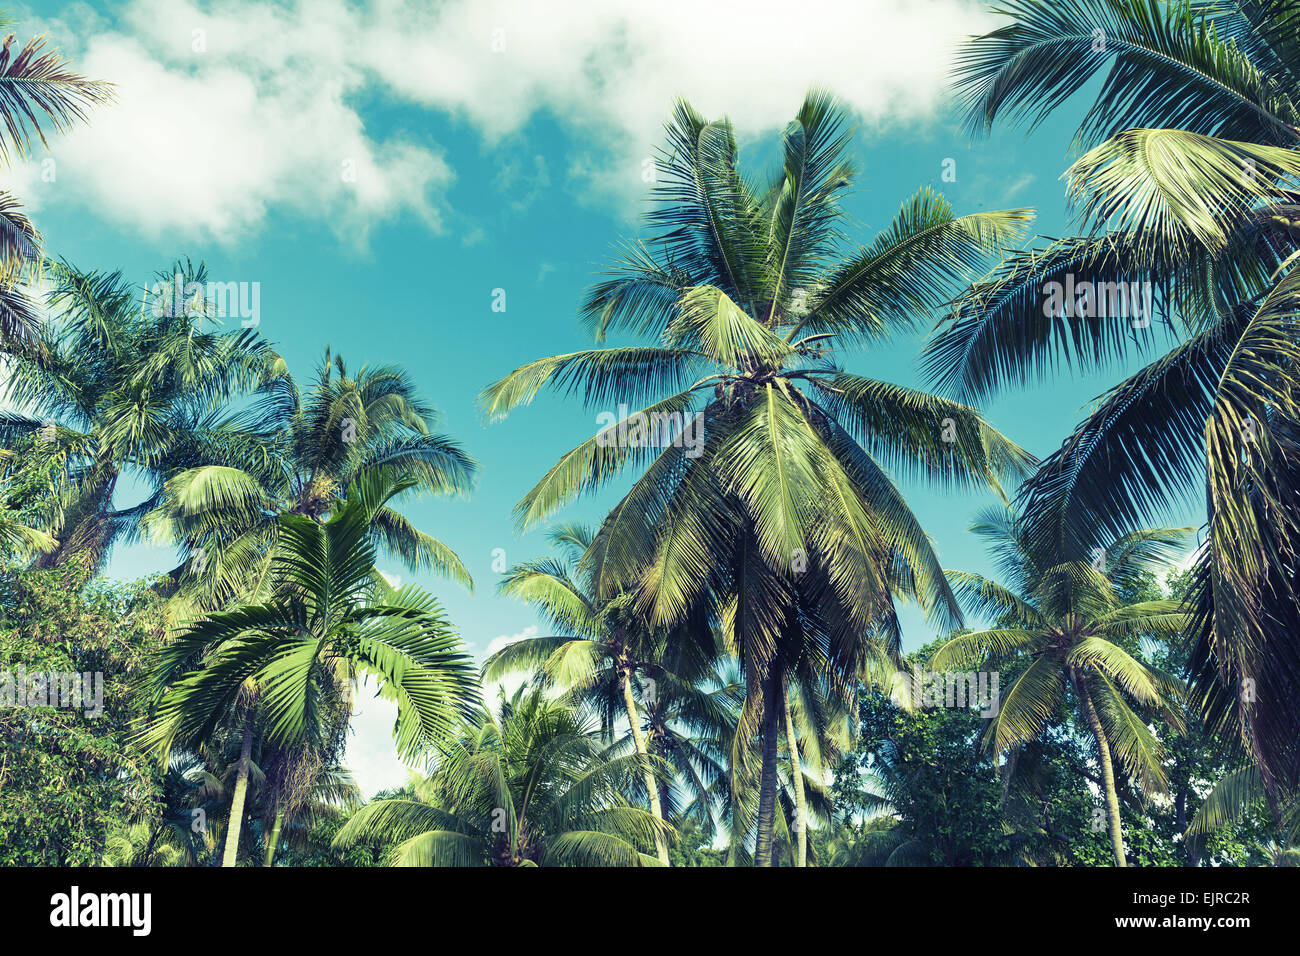 Kokosnuss-Palmen über bewölktem Himmelshintergrund. Vintage-Stil. Foto mit blau getönten Filterwirkung Stockfoto